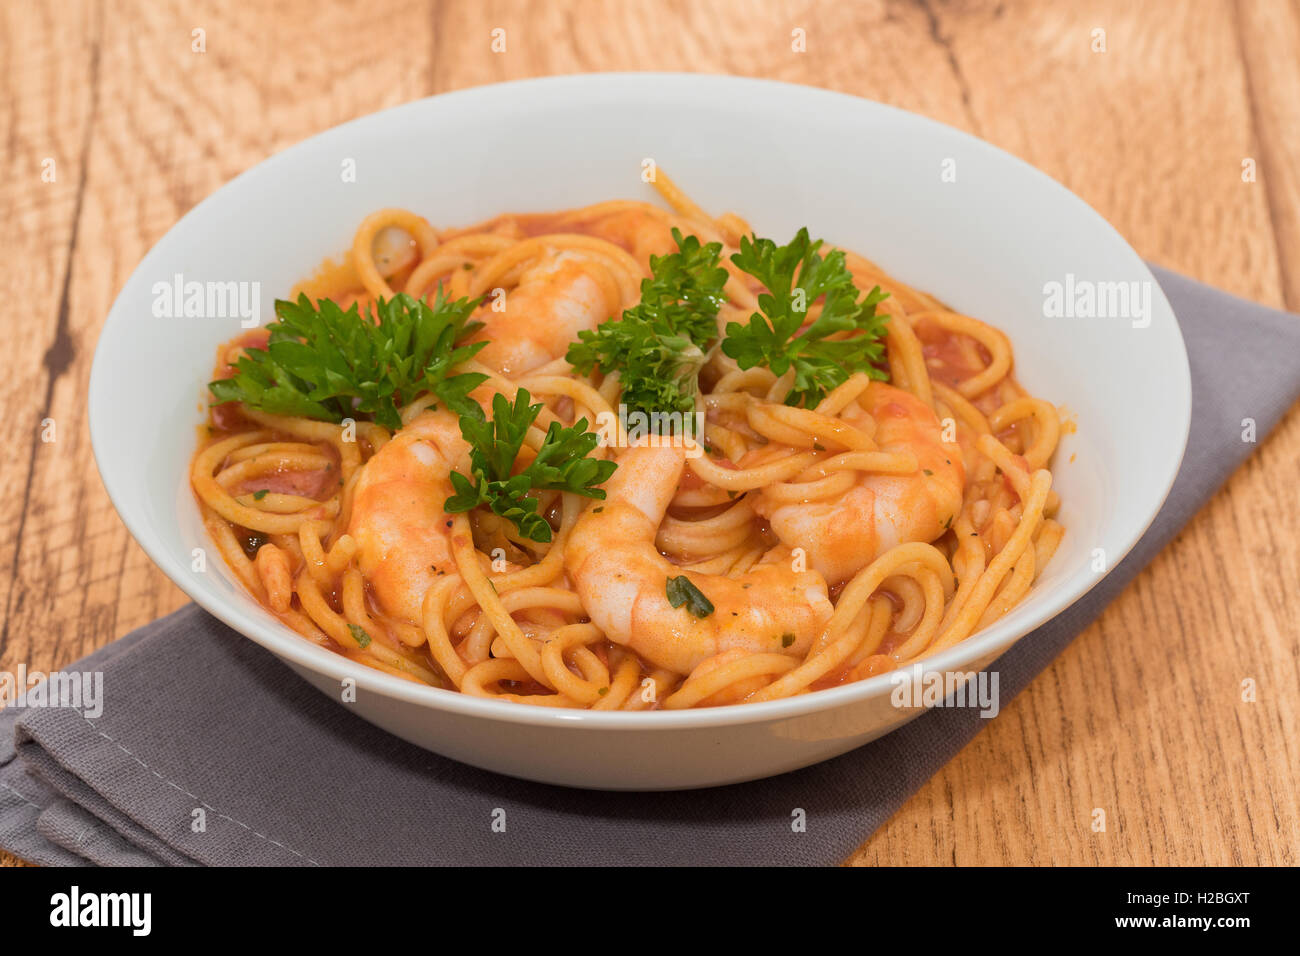 Prawns in spaghetti with tomato sauce Stock Photo